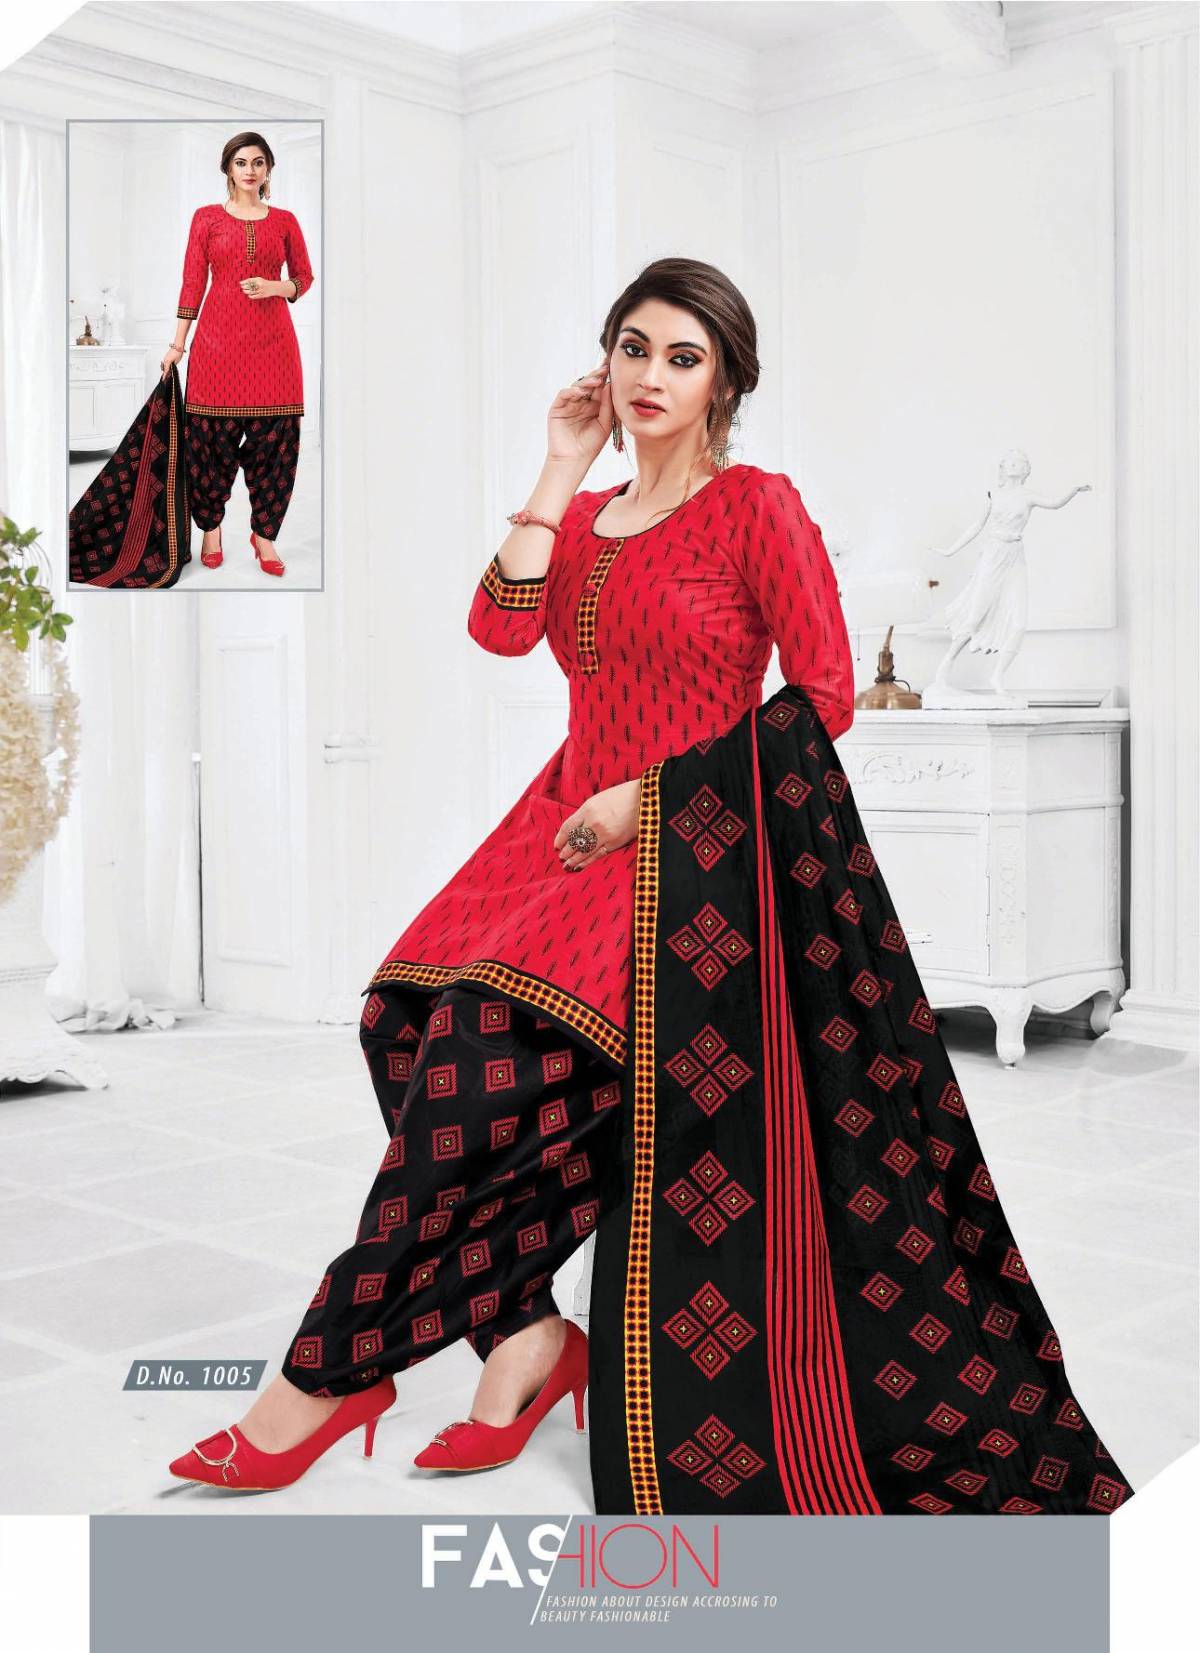 same postar Pranjul Readymade Cotton Patiyala Dress at Rs 650/piece in Surat